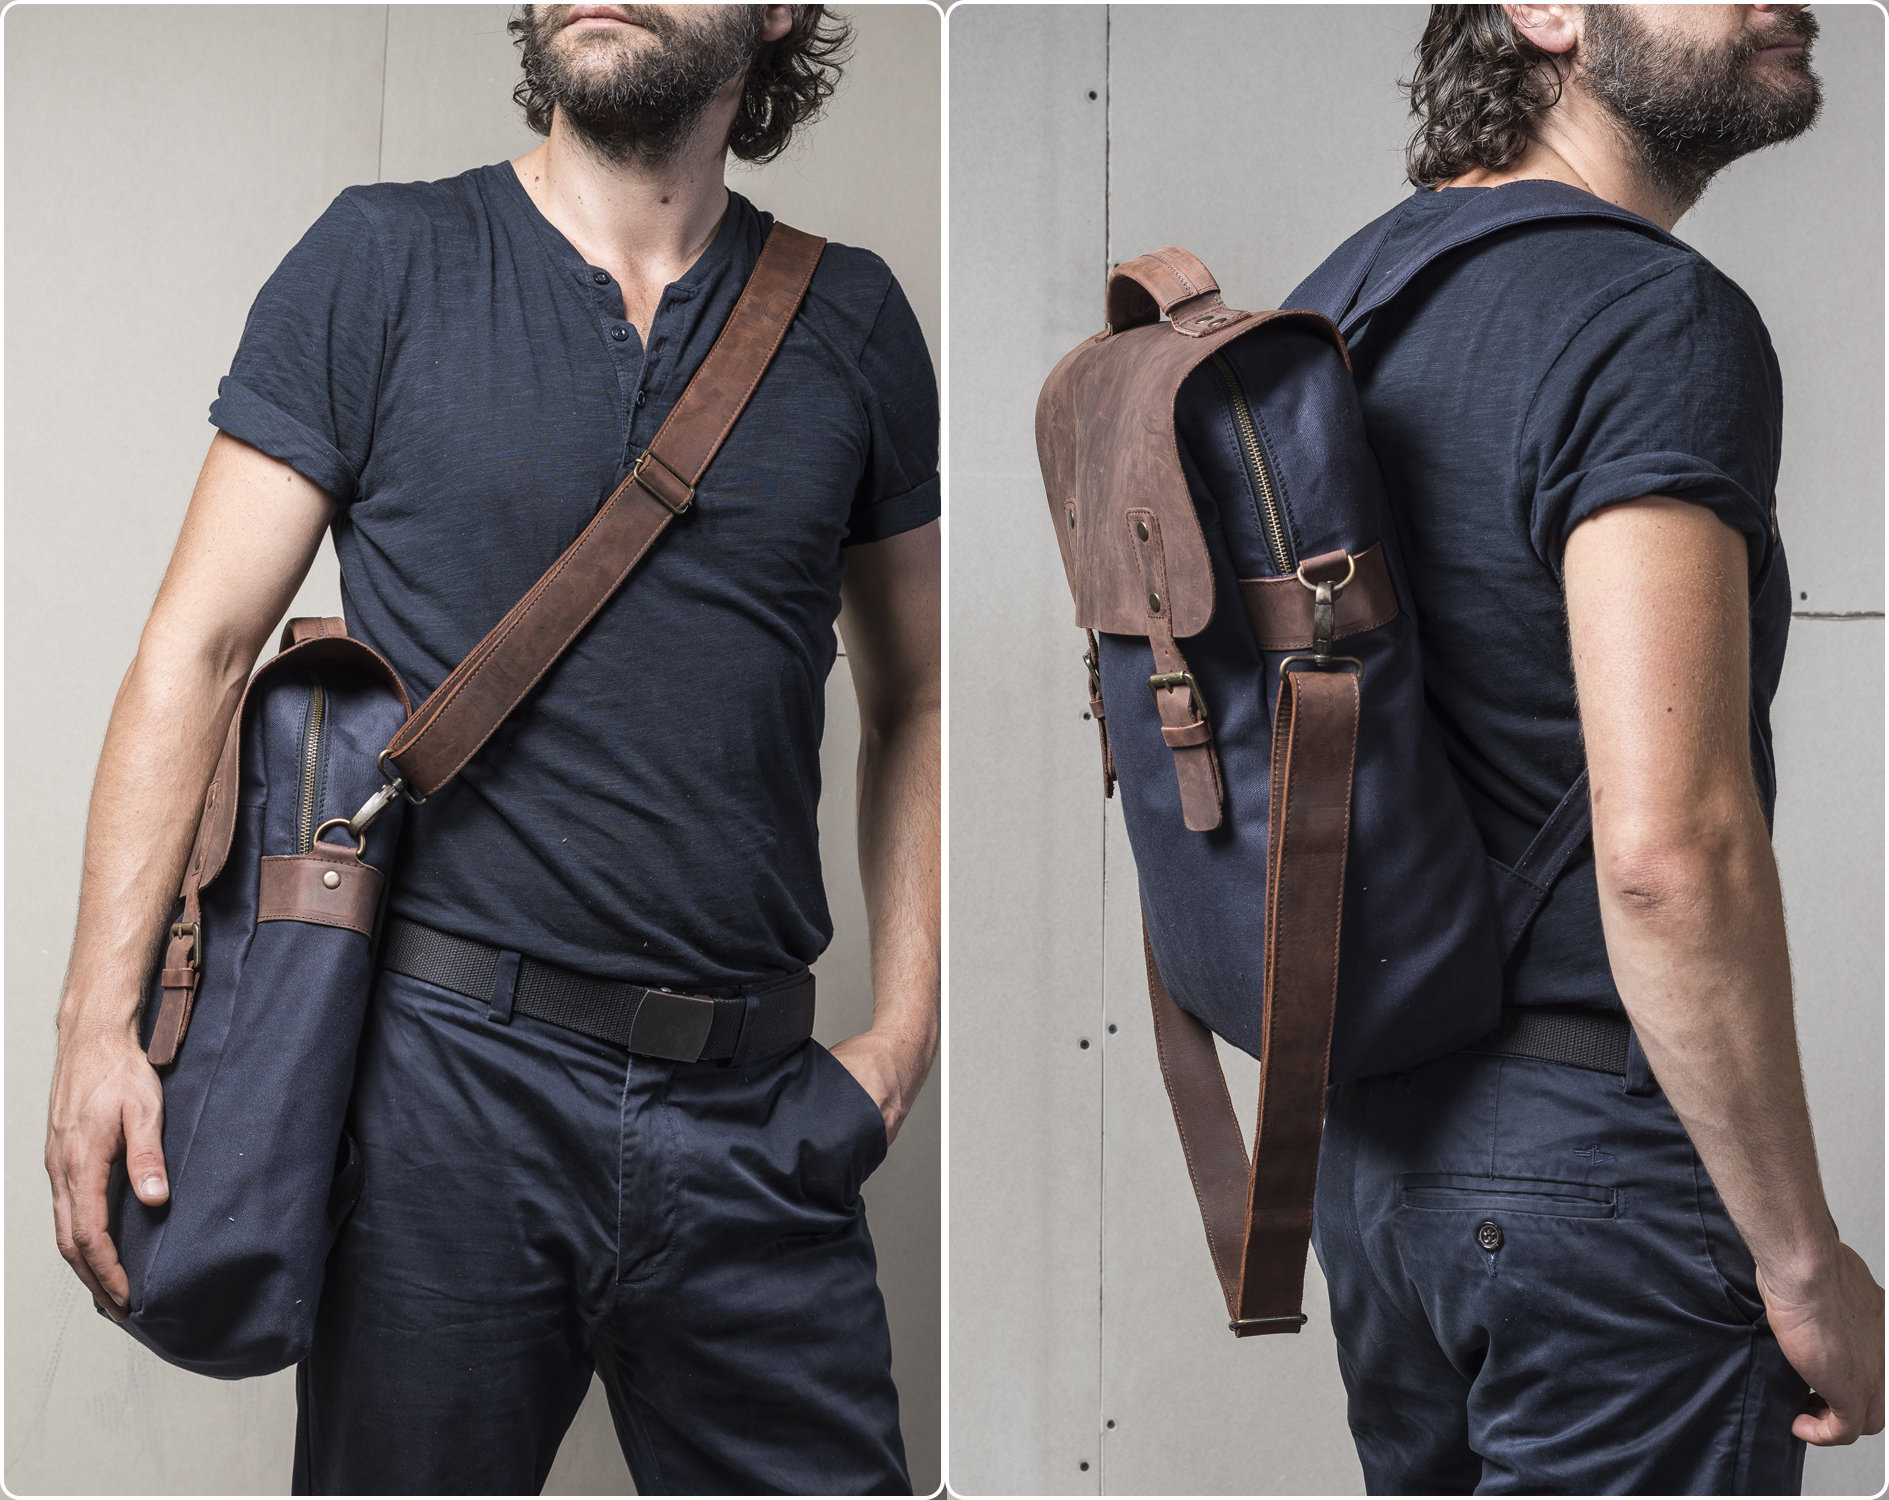 Personalisierter Rucksack Für Männer, Wasserabweisendes Gewachstes Segeltuch Und Leder, 2 in 1 Tasche, Laptopfach Schultergurt, Handmade Artisans von Tram21